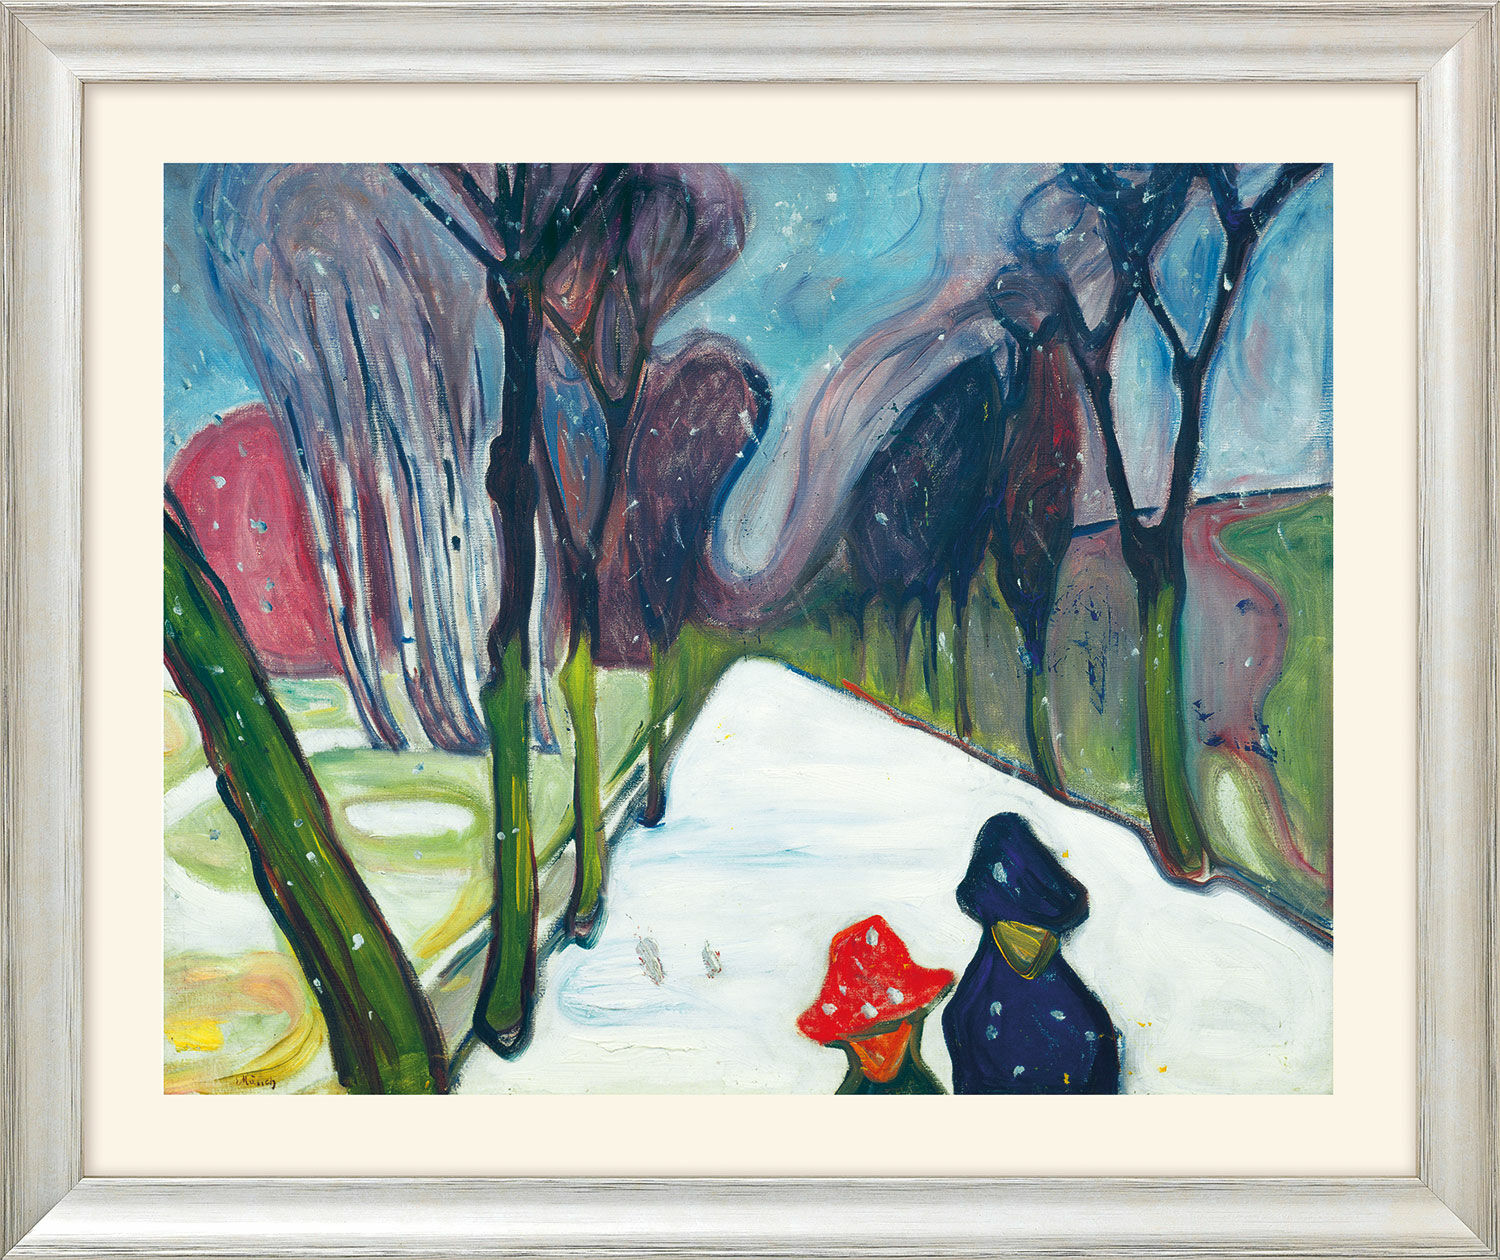 Beeld "Laan in sneeuwstorm" (1906) - uit "Seizoenencyclus", zilverkleurige ingelijste versie von Edvard Munch